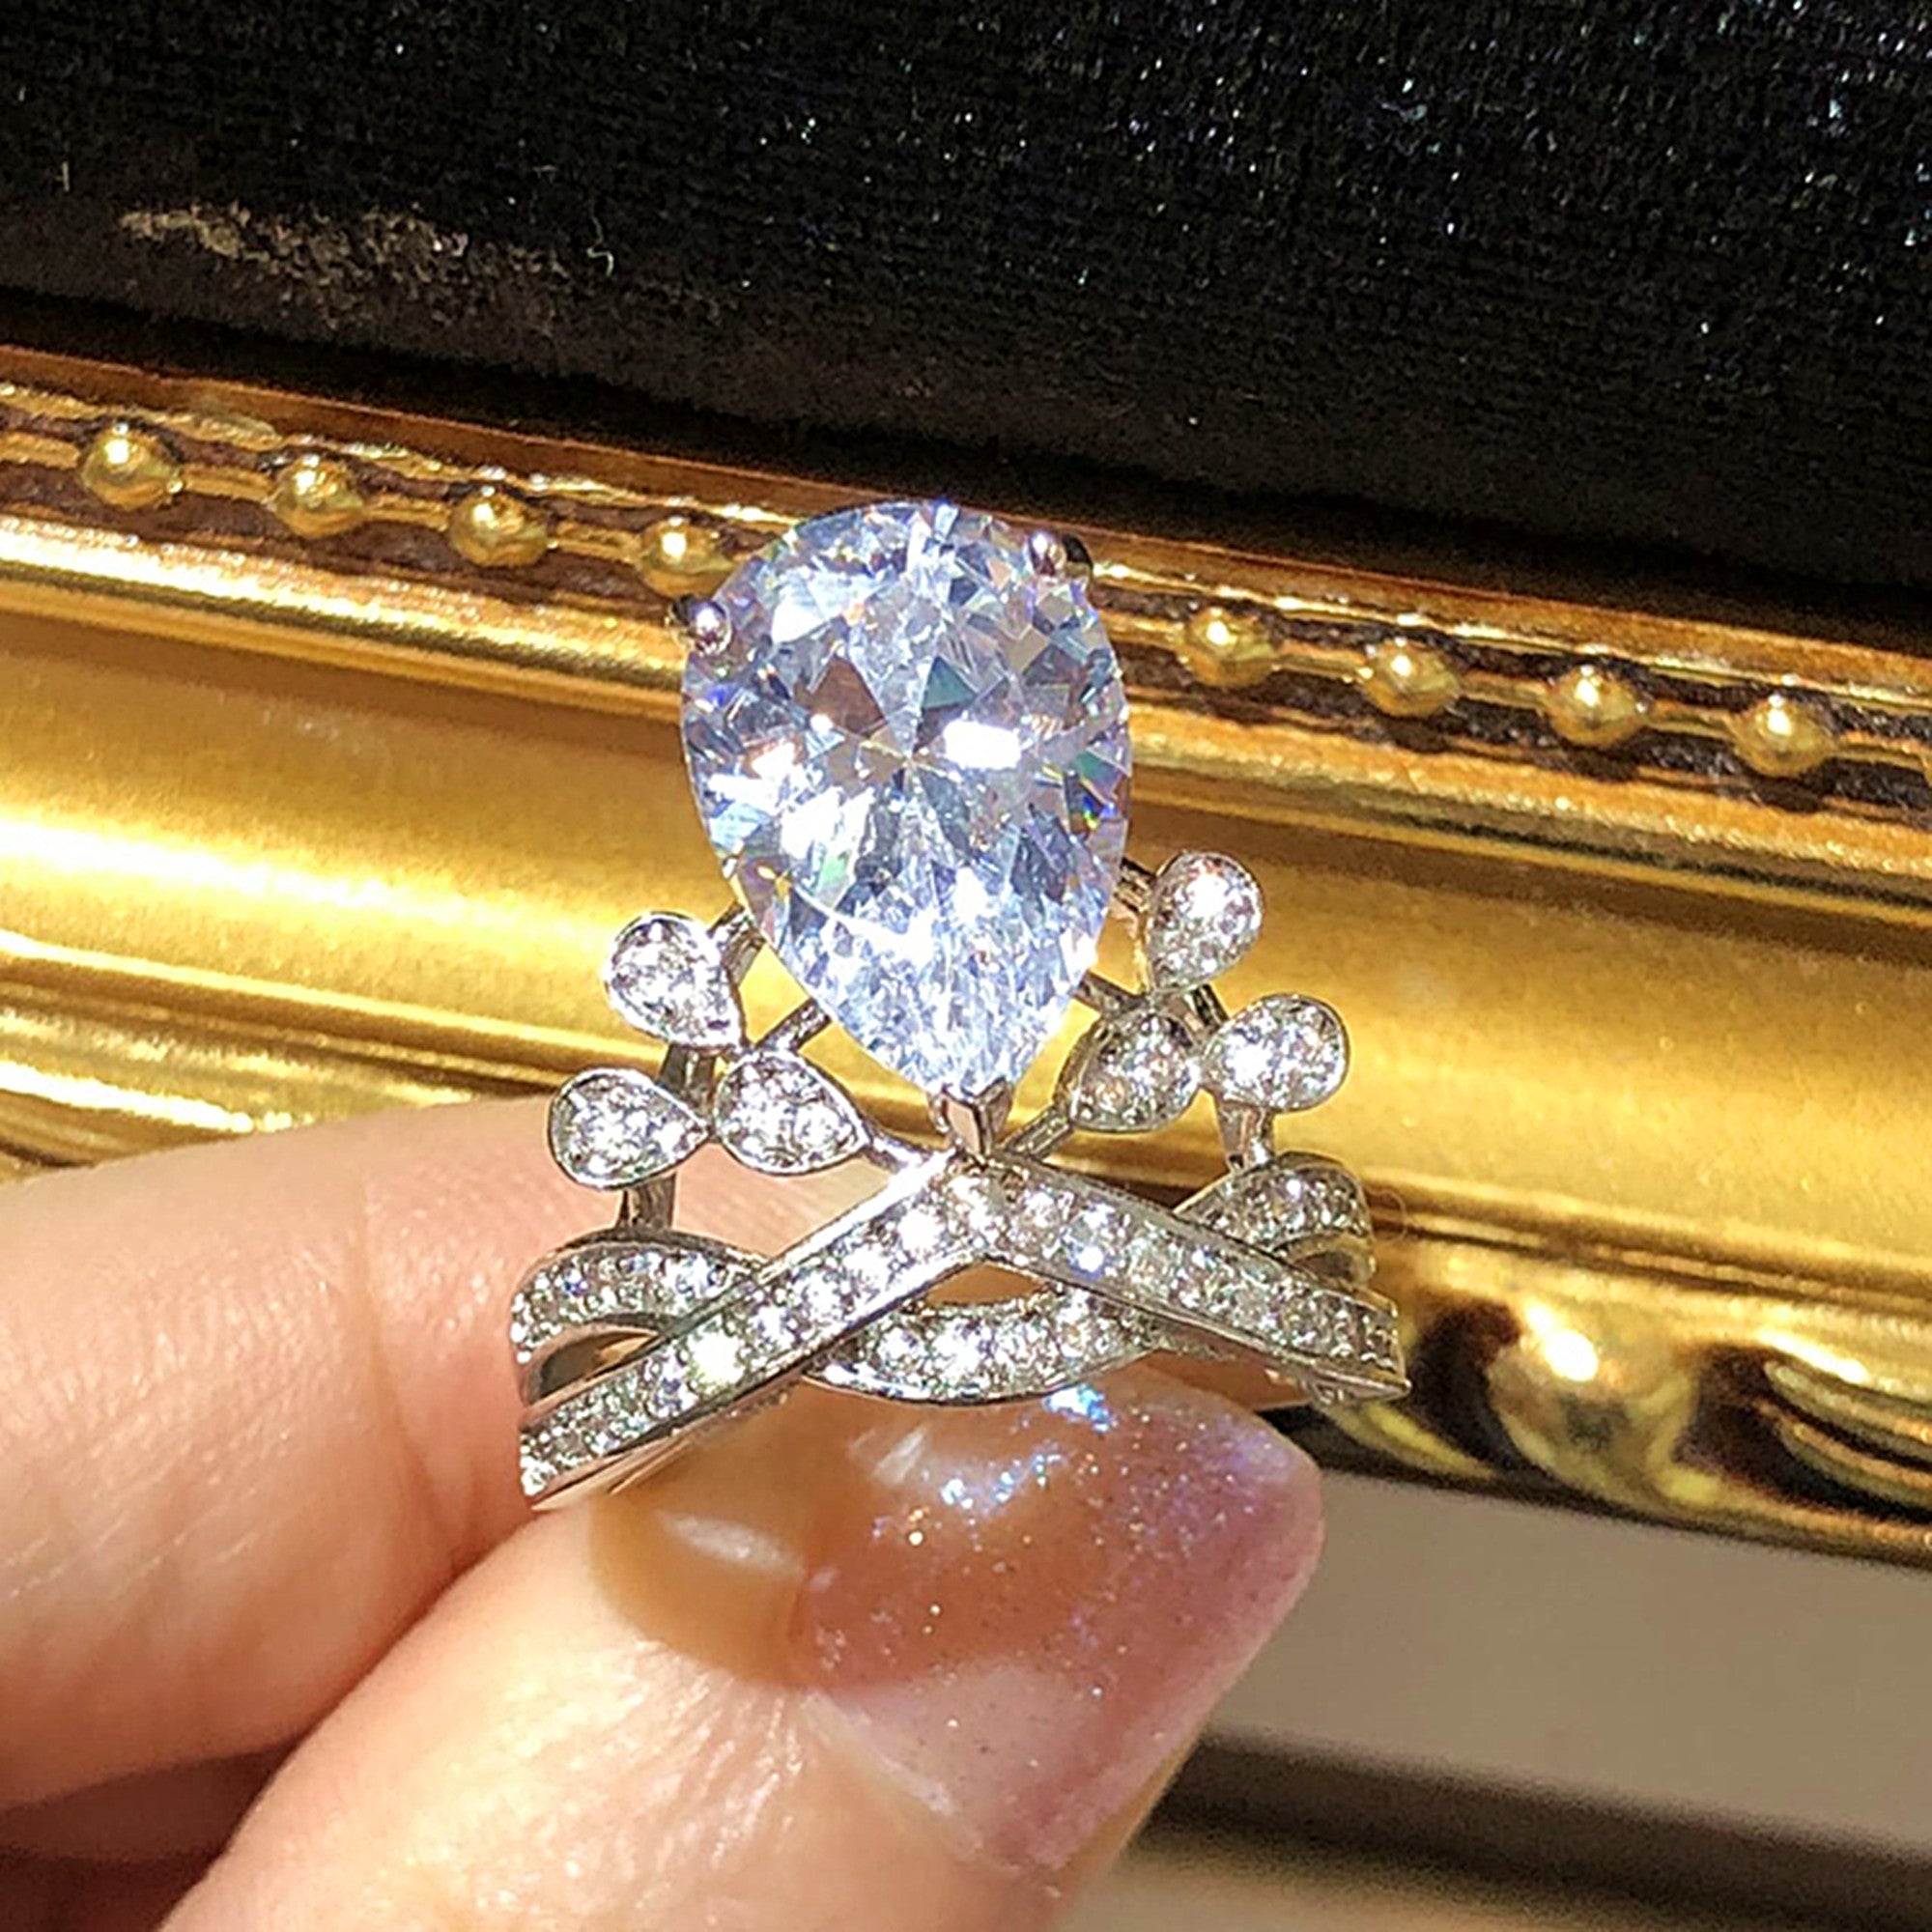 The Pave Diamond Ring - Teardrop Crown